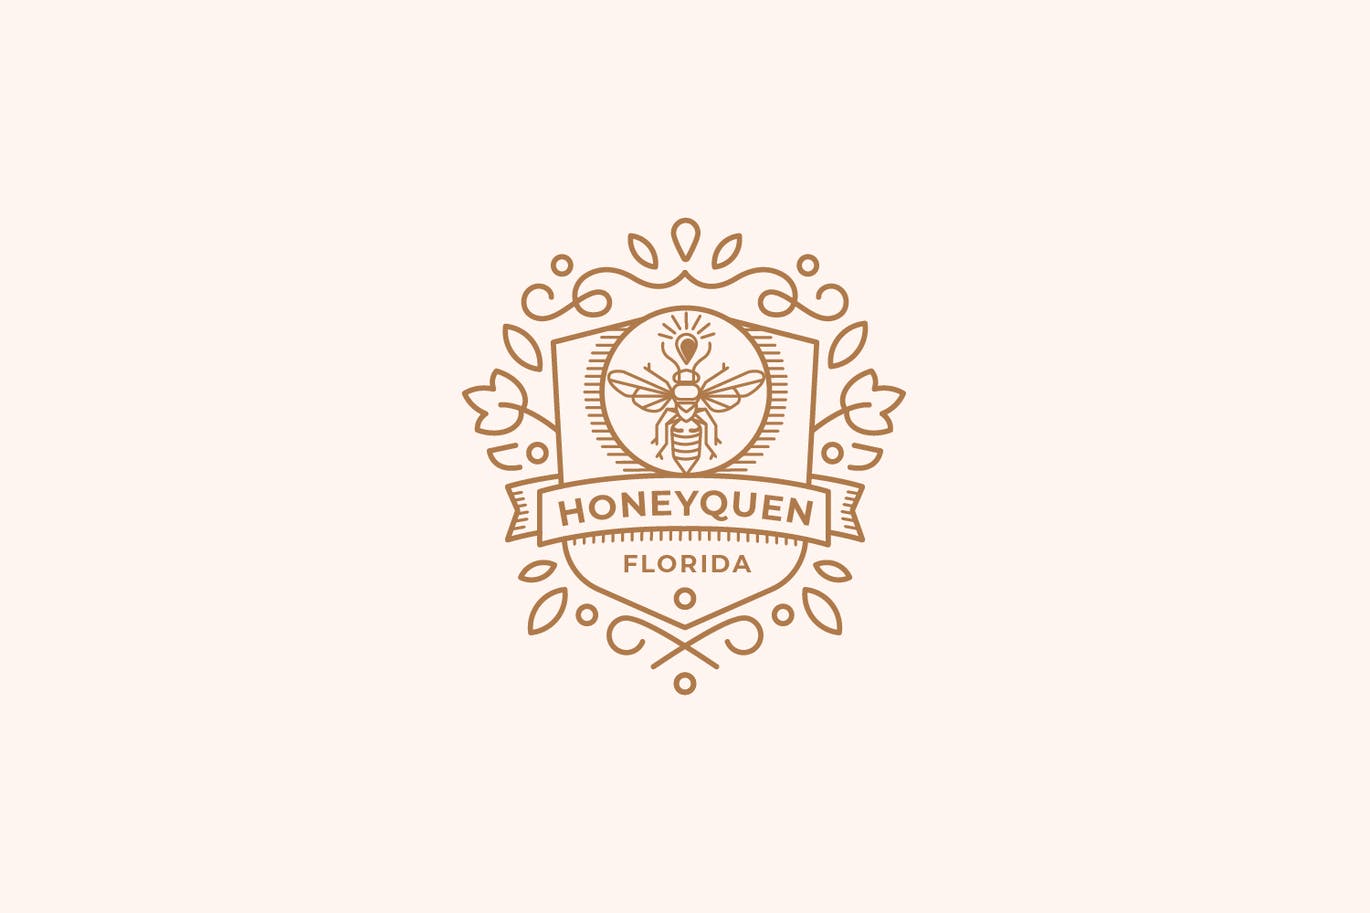 Honey queen, bees, badge, vintage logo template